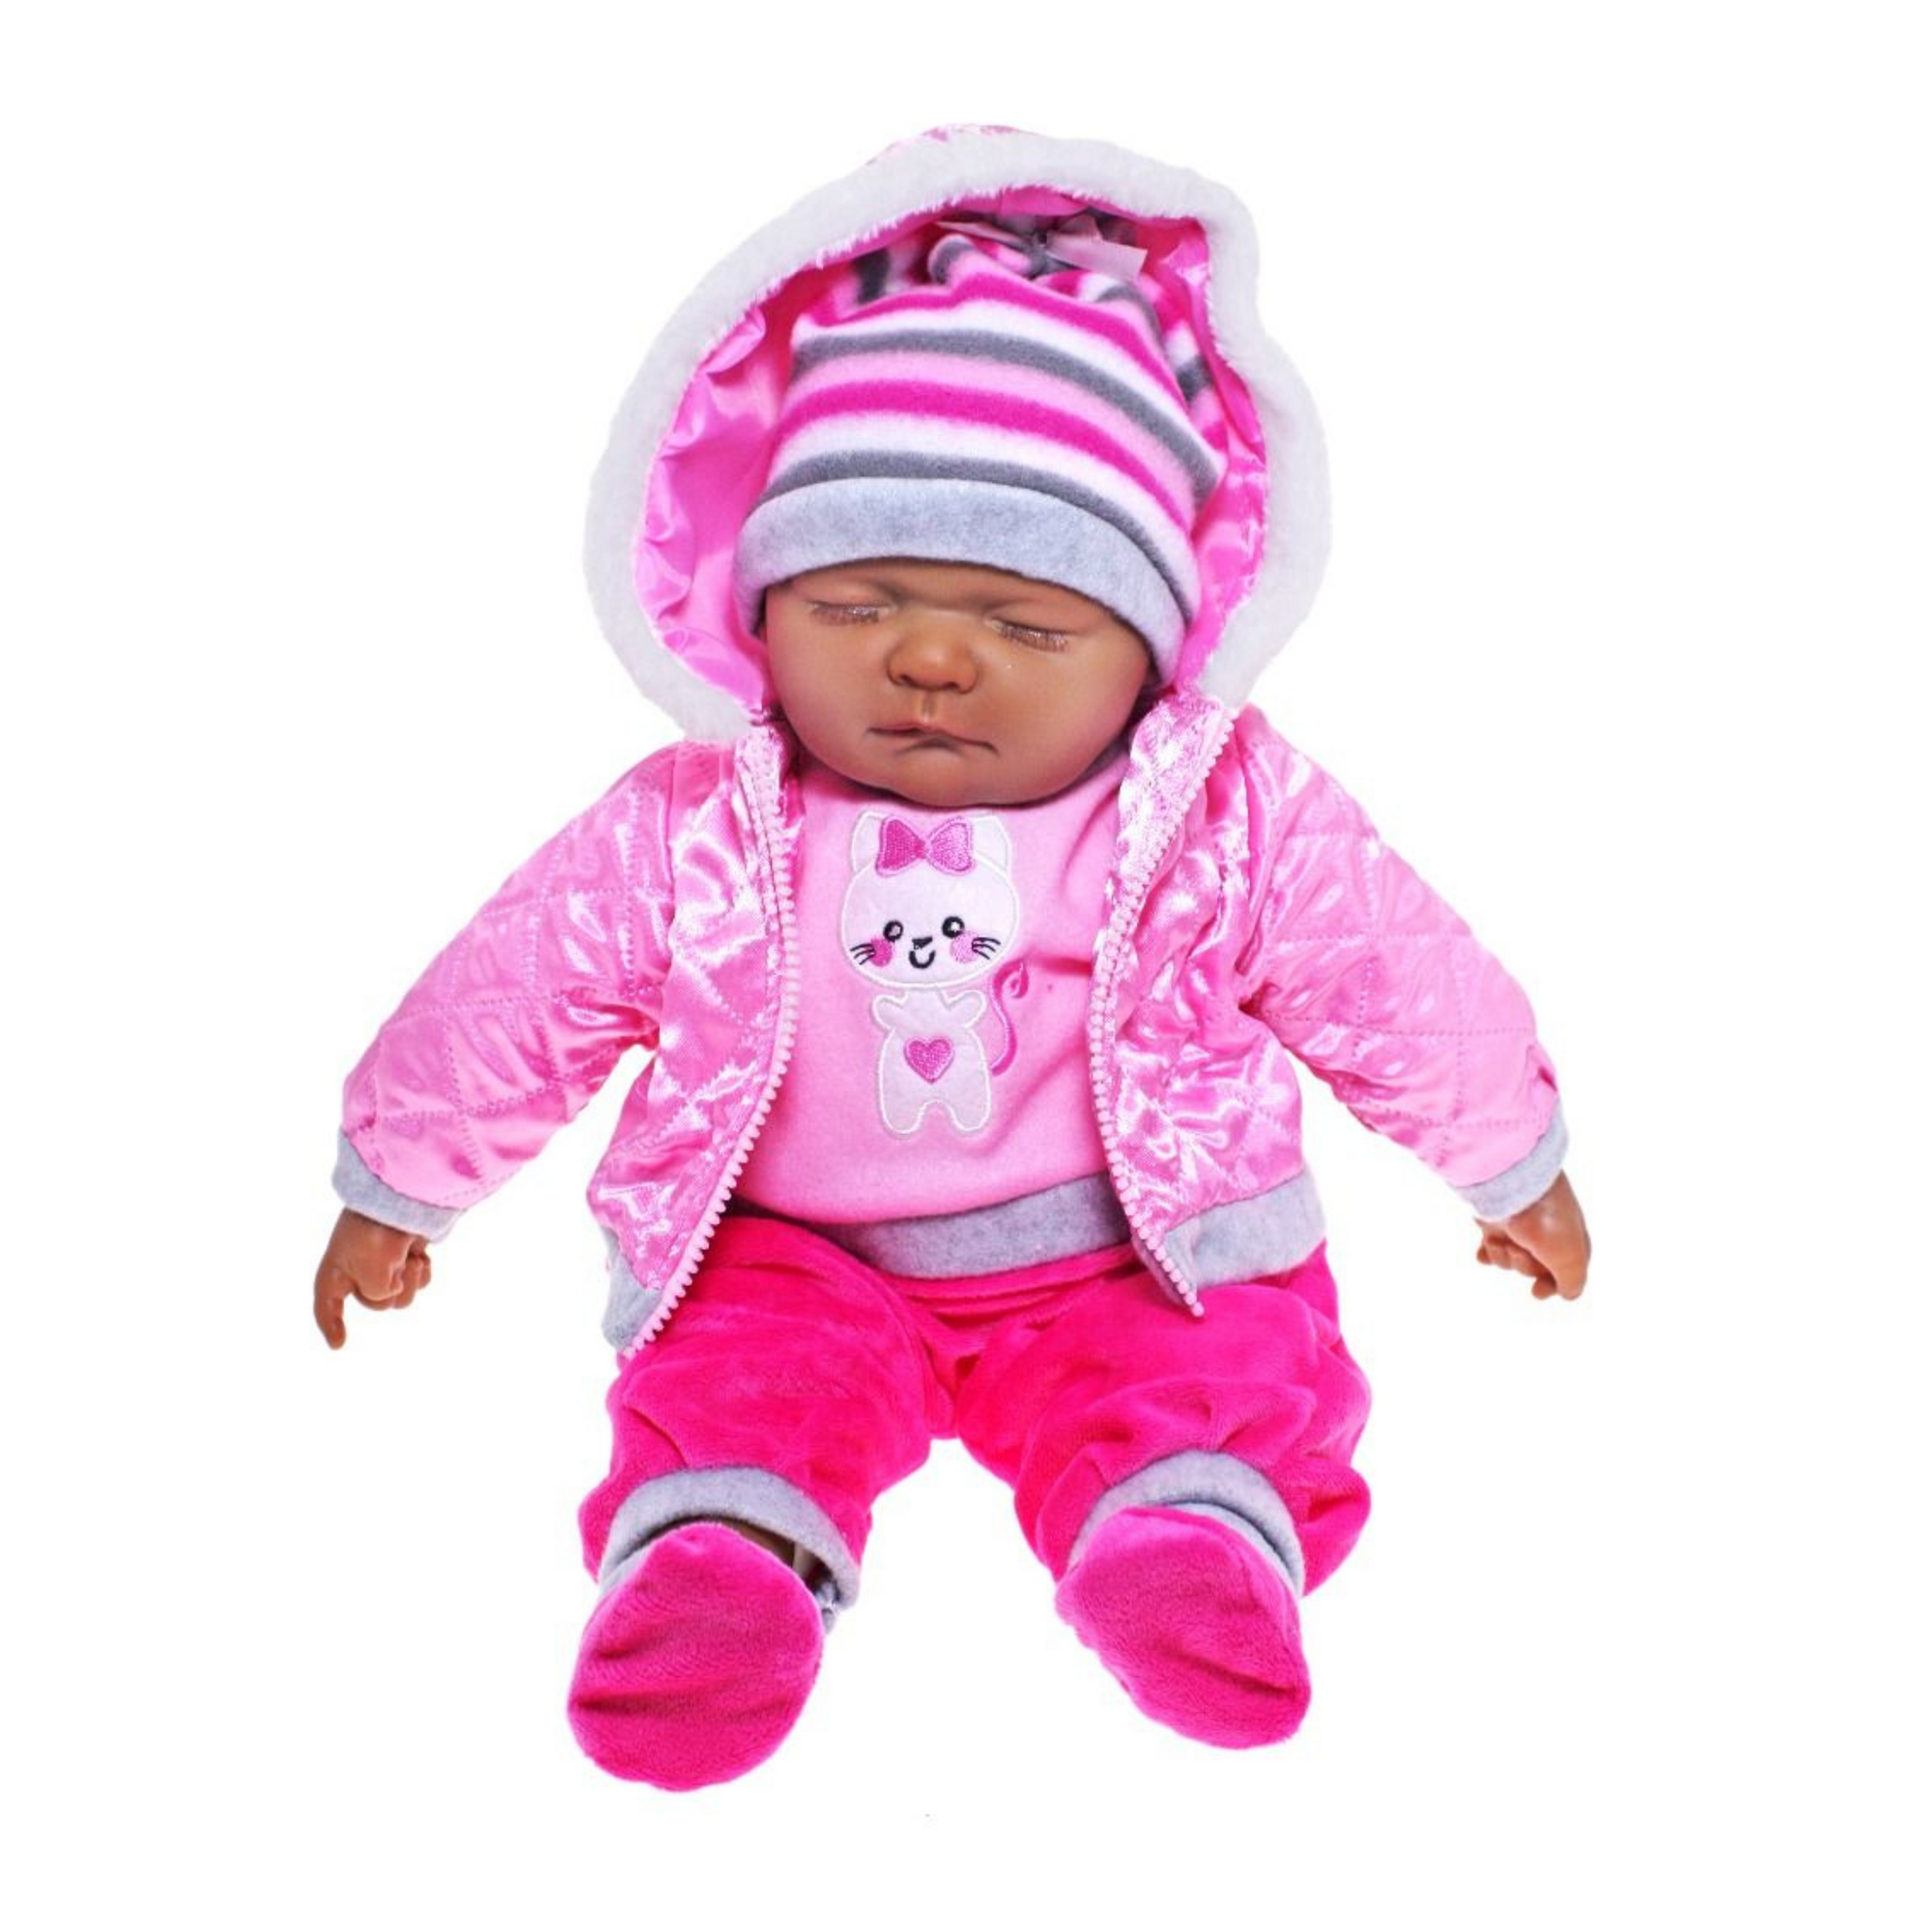 Baby Doll Pink Alinta